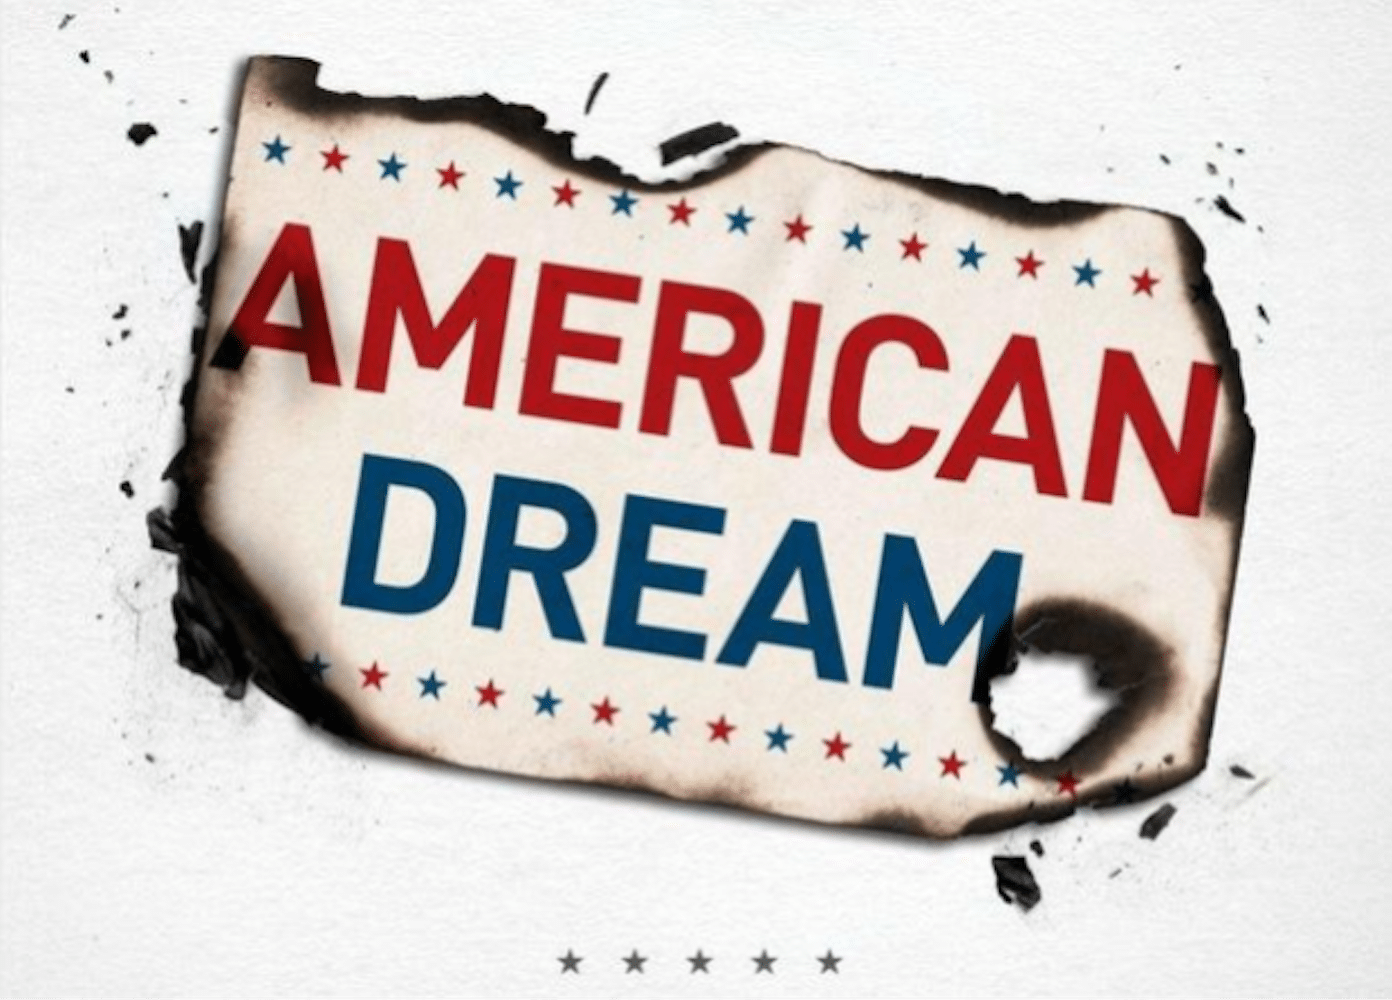 The American Dream